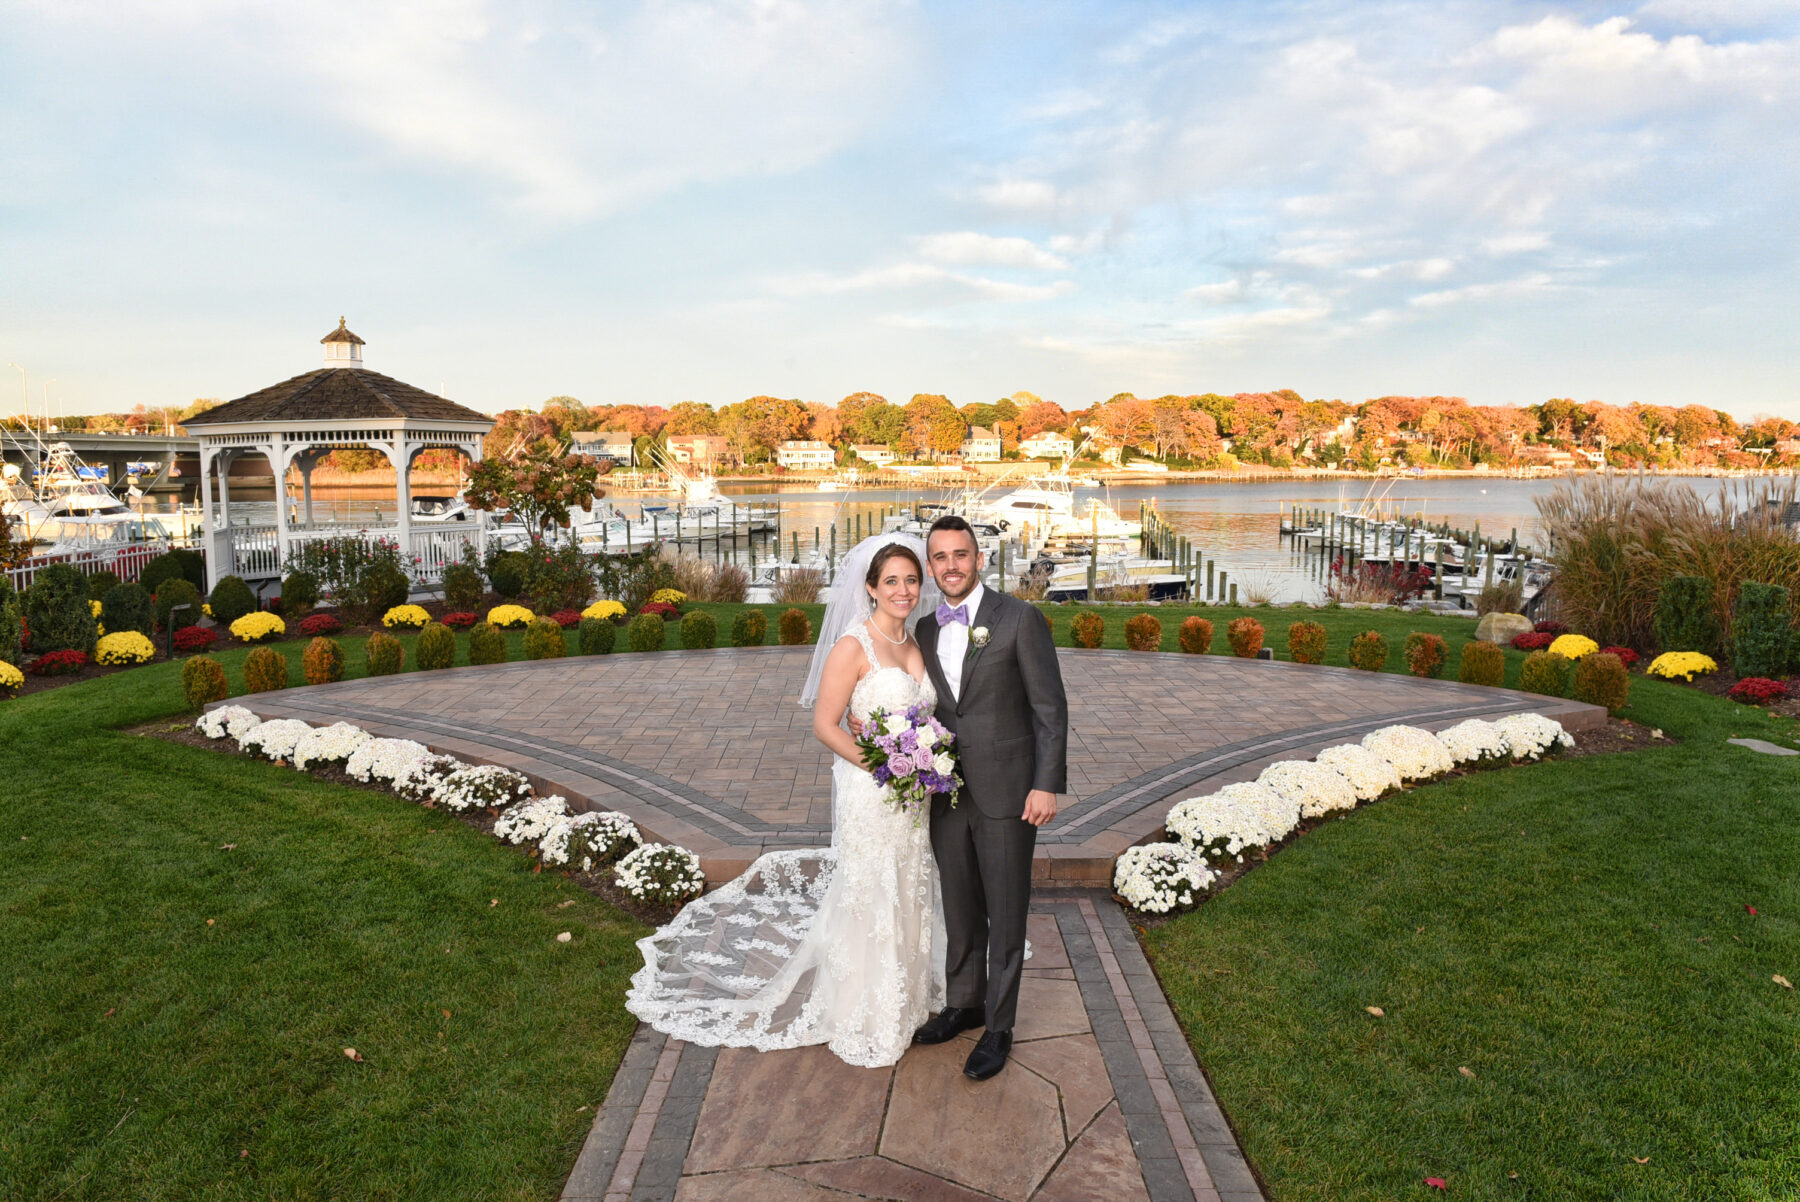 NJ wedding photographer couples choice, NJ Wedding Photographer Couples Choice